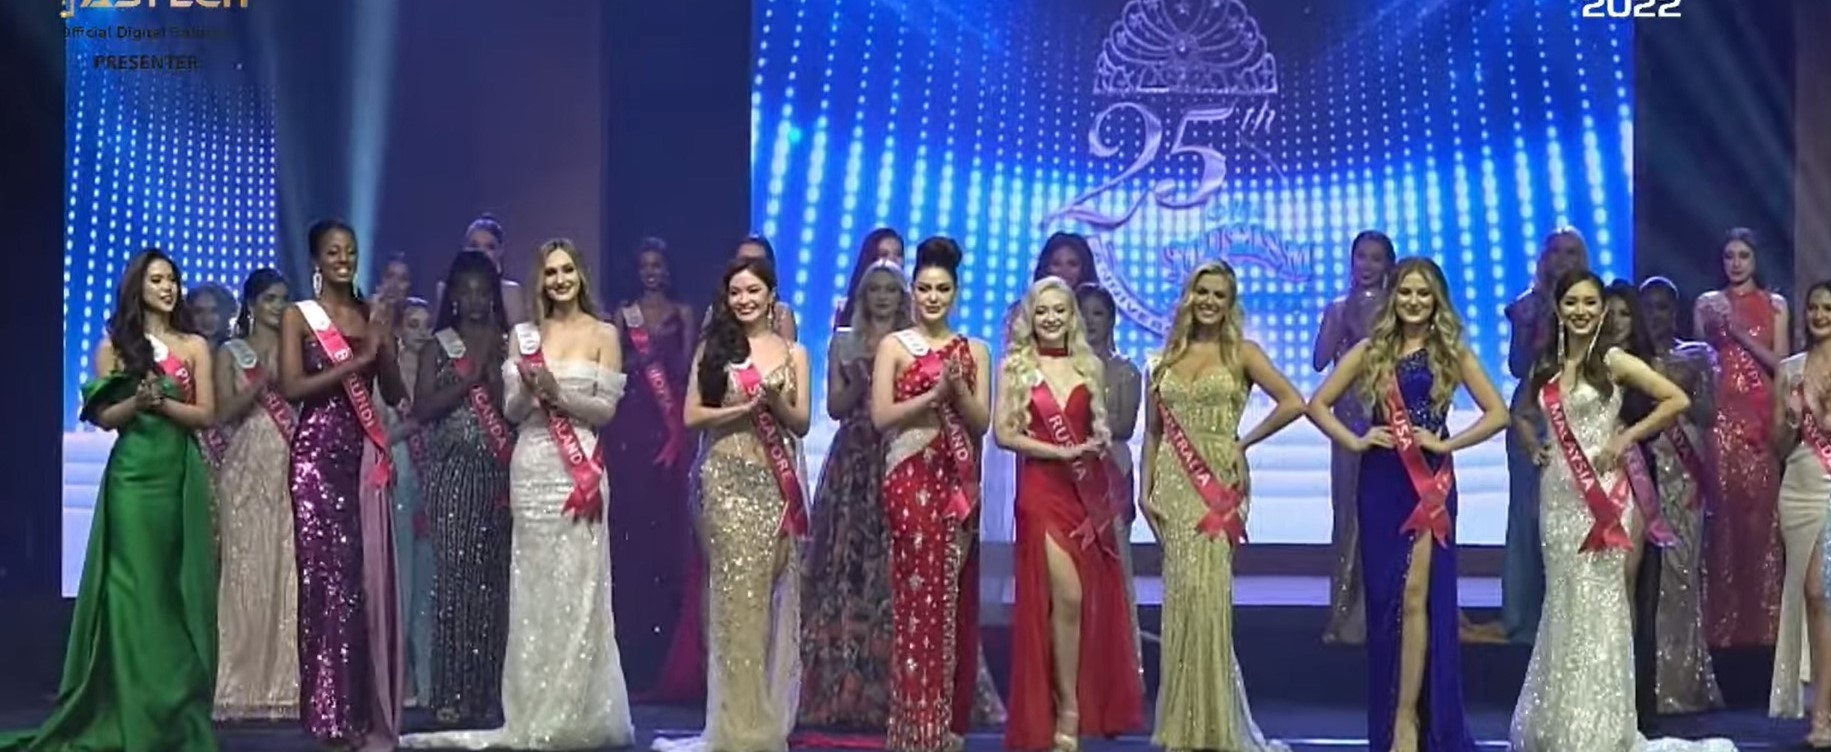 Đại diện Thái Lan đăng quang Miss Tourism International 2022 là ai? - Ảnh 5.